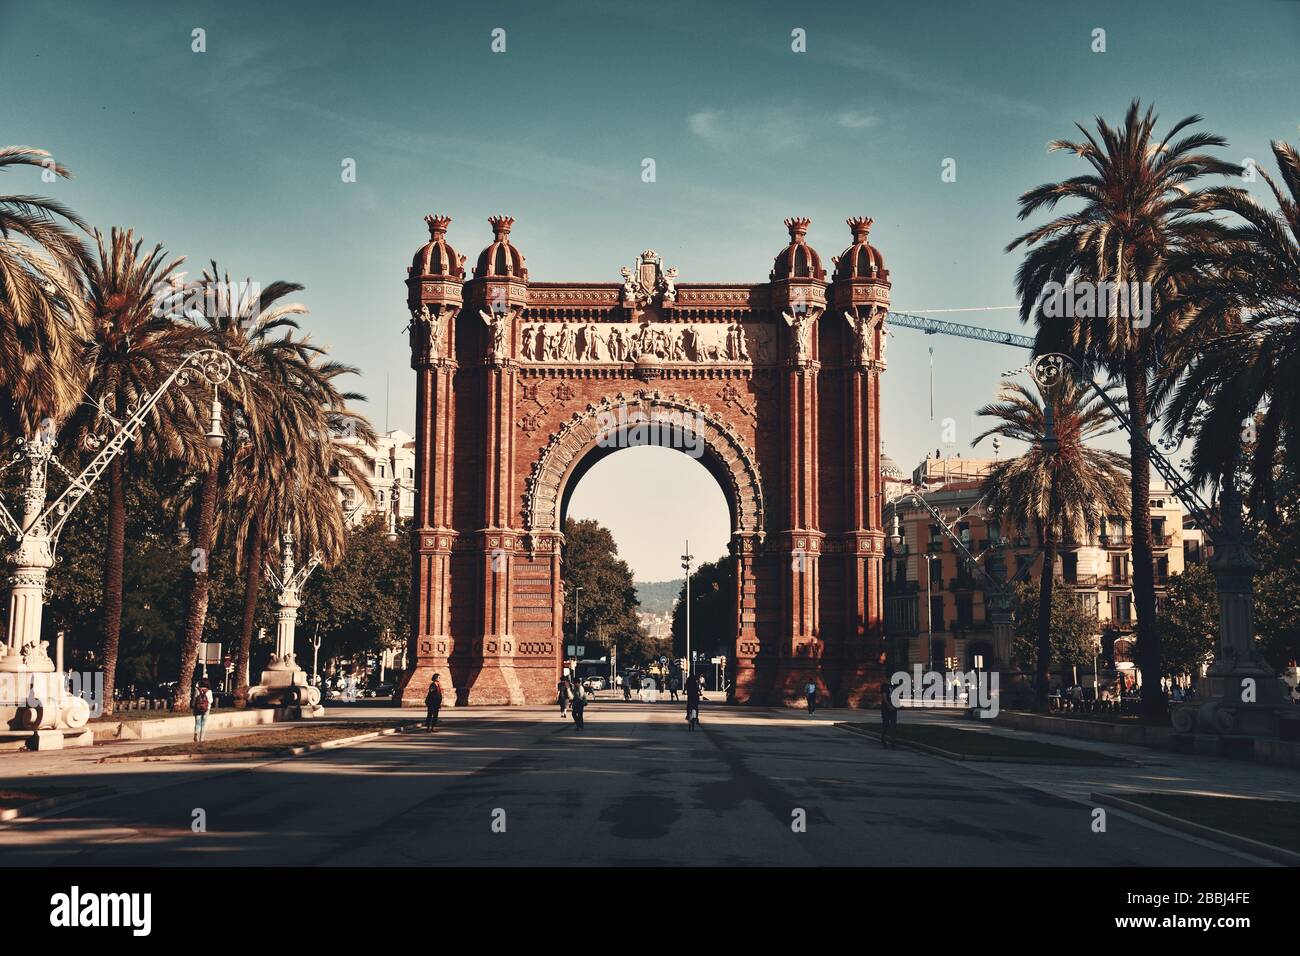 Arc de Triomf fu costruito dall'architetto Josep Vilaseca i Casanovas come la porta di accesso principale per il 1888 Barcellona Fiera Mondiale Foto Stock